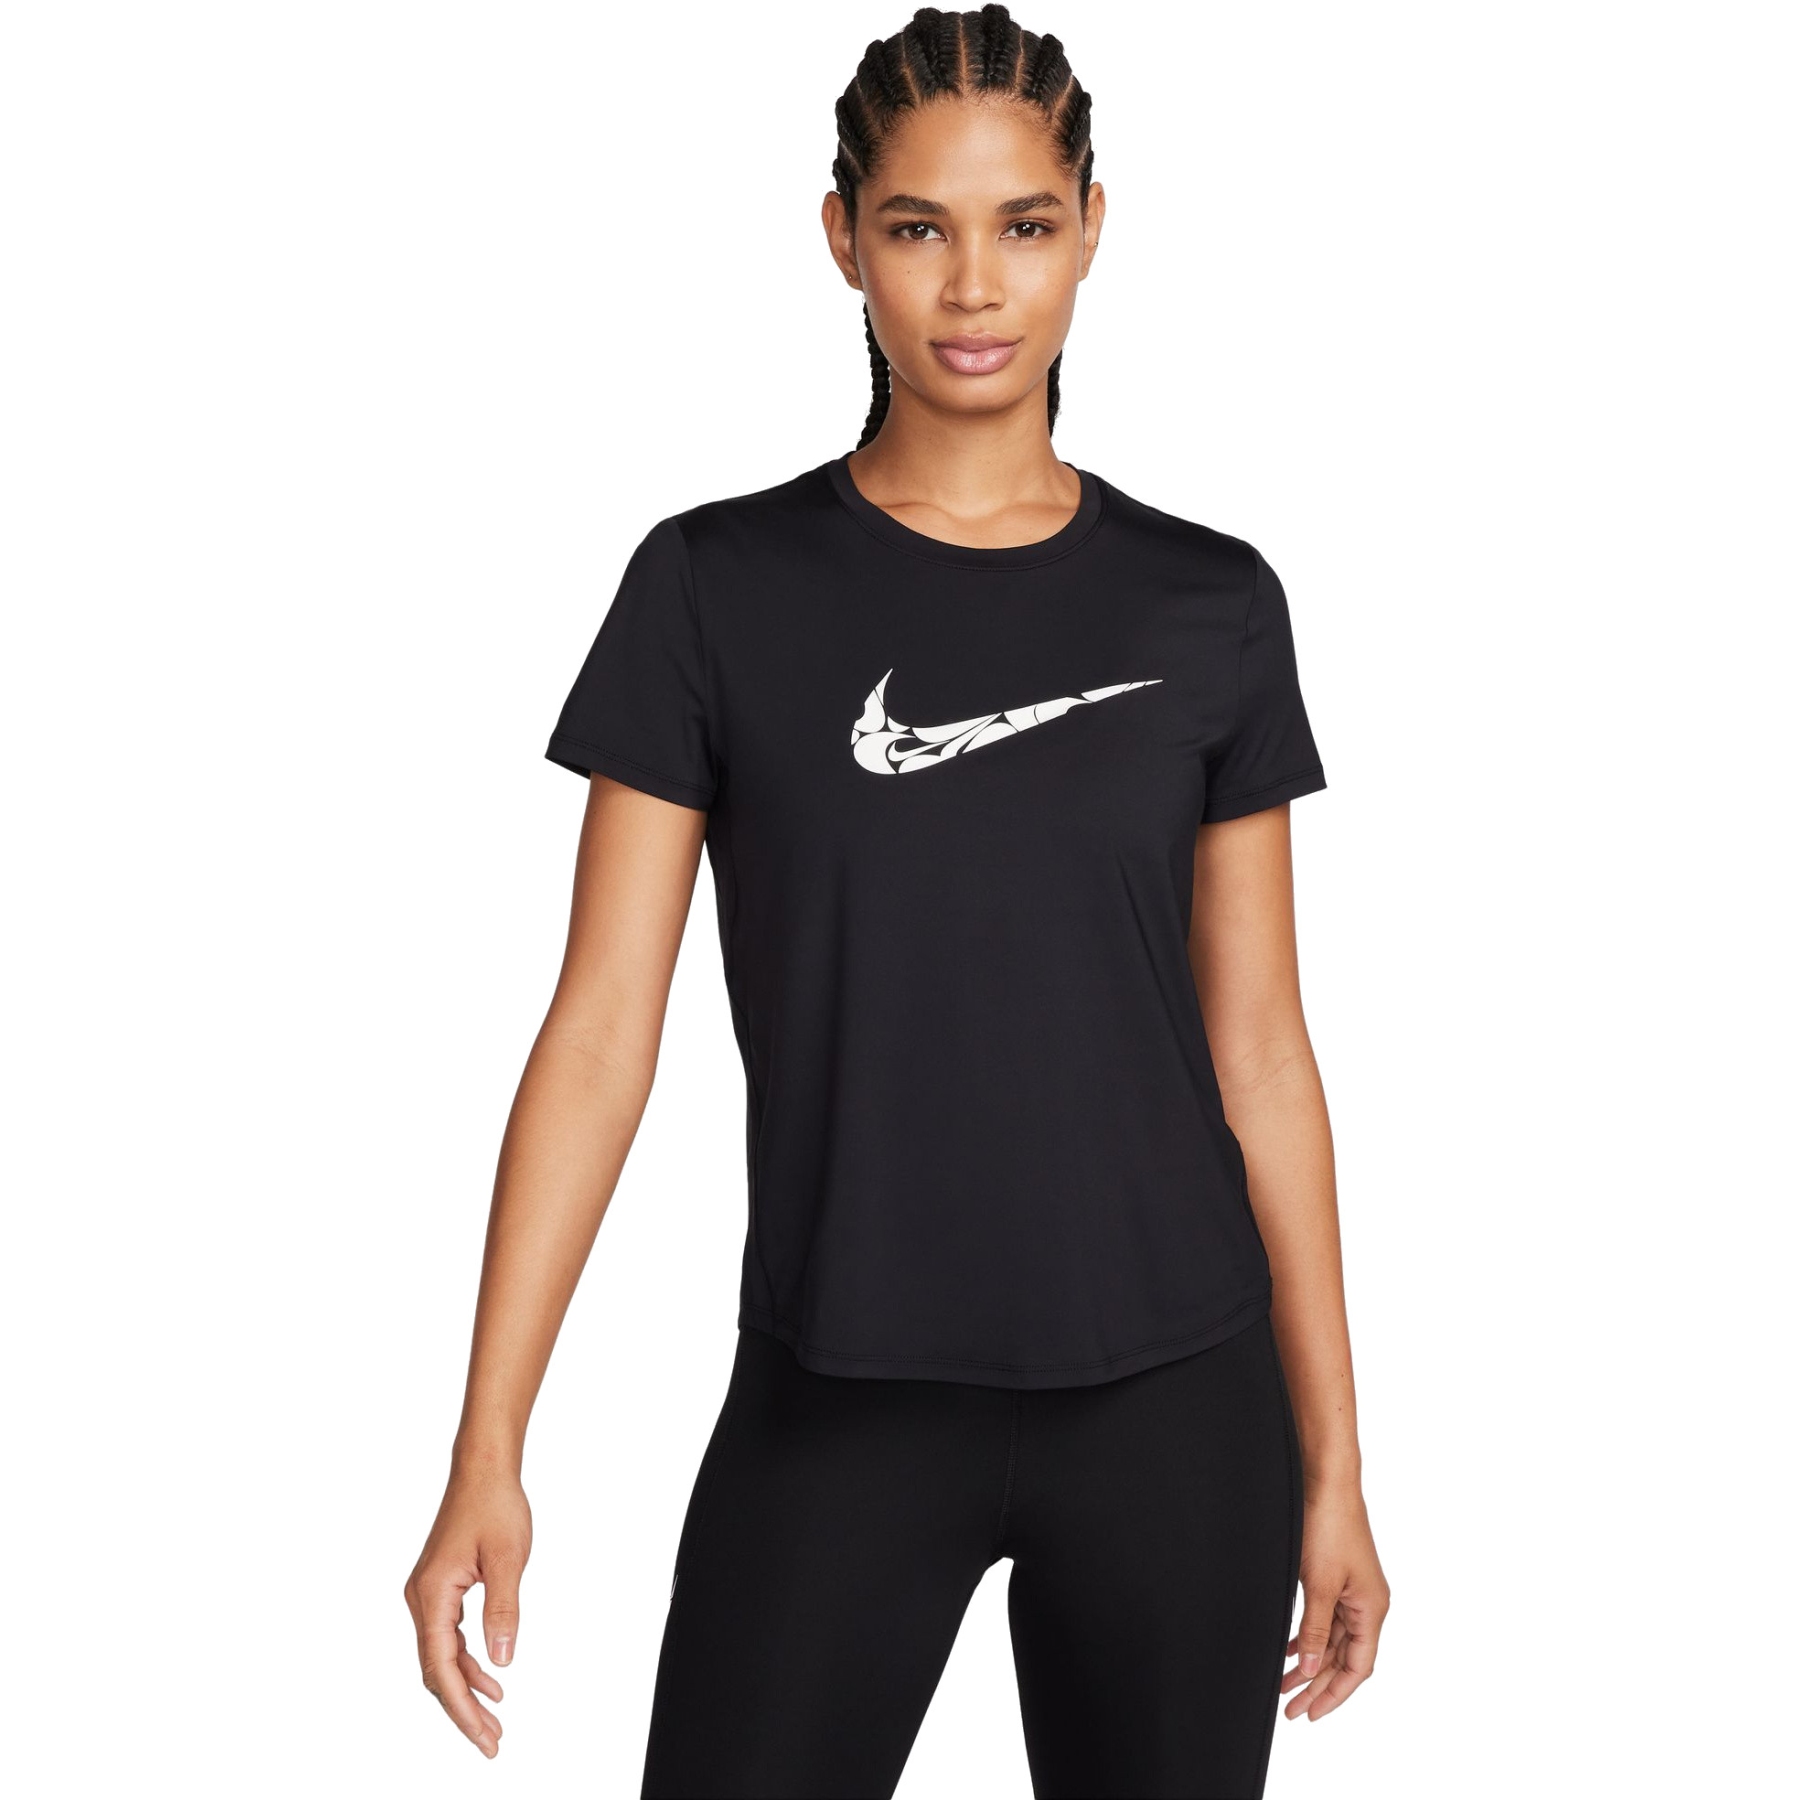 Produktbild von Nike One Swoosh Dri-FIT Kurzarm-Laufoberteil für Damen - schwarz FN2618-010